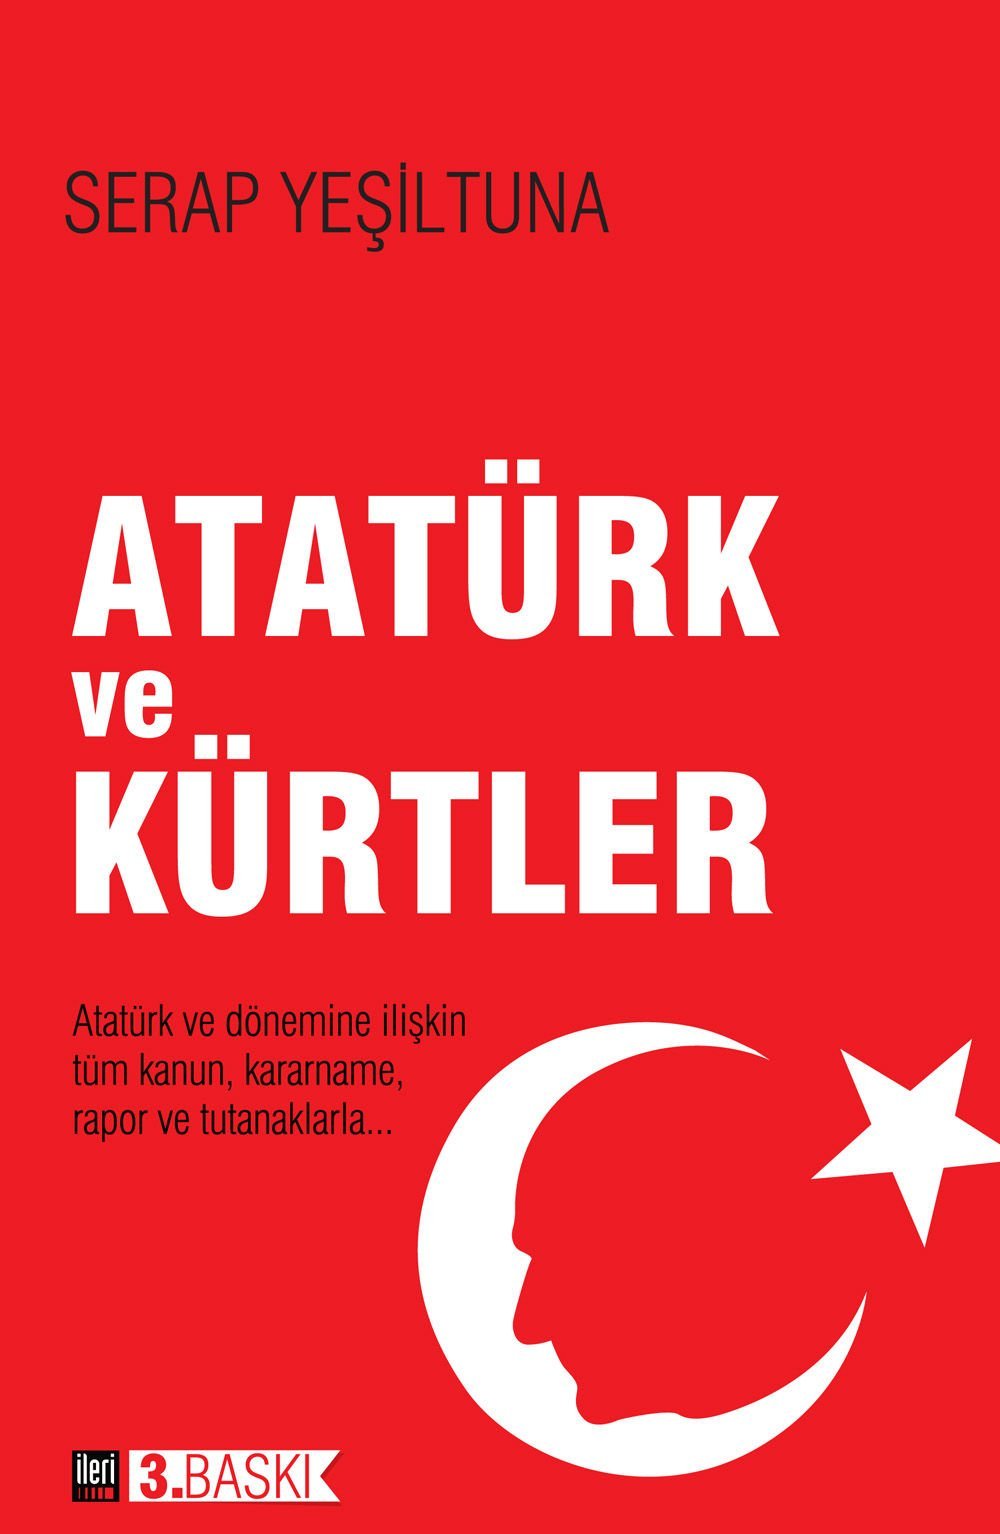 Atatürk ve Kürtler